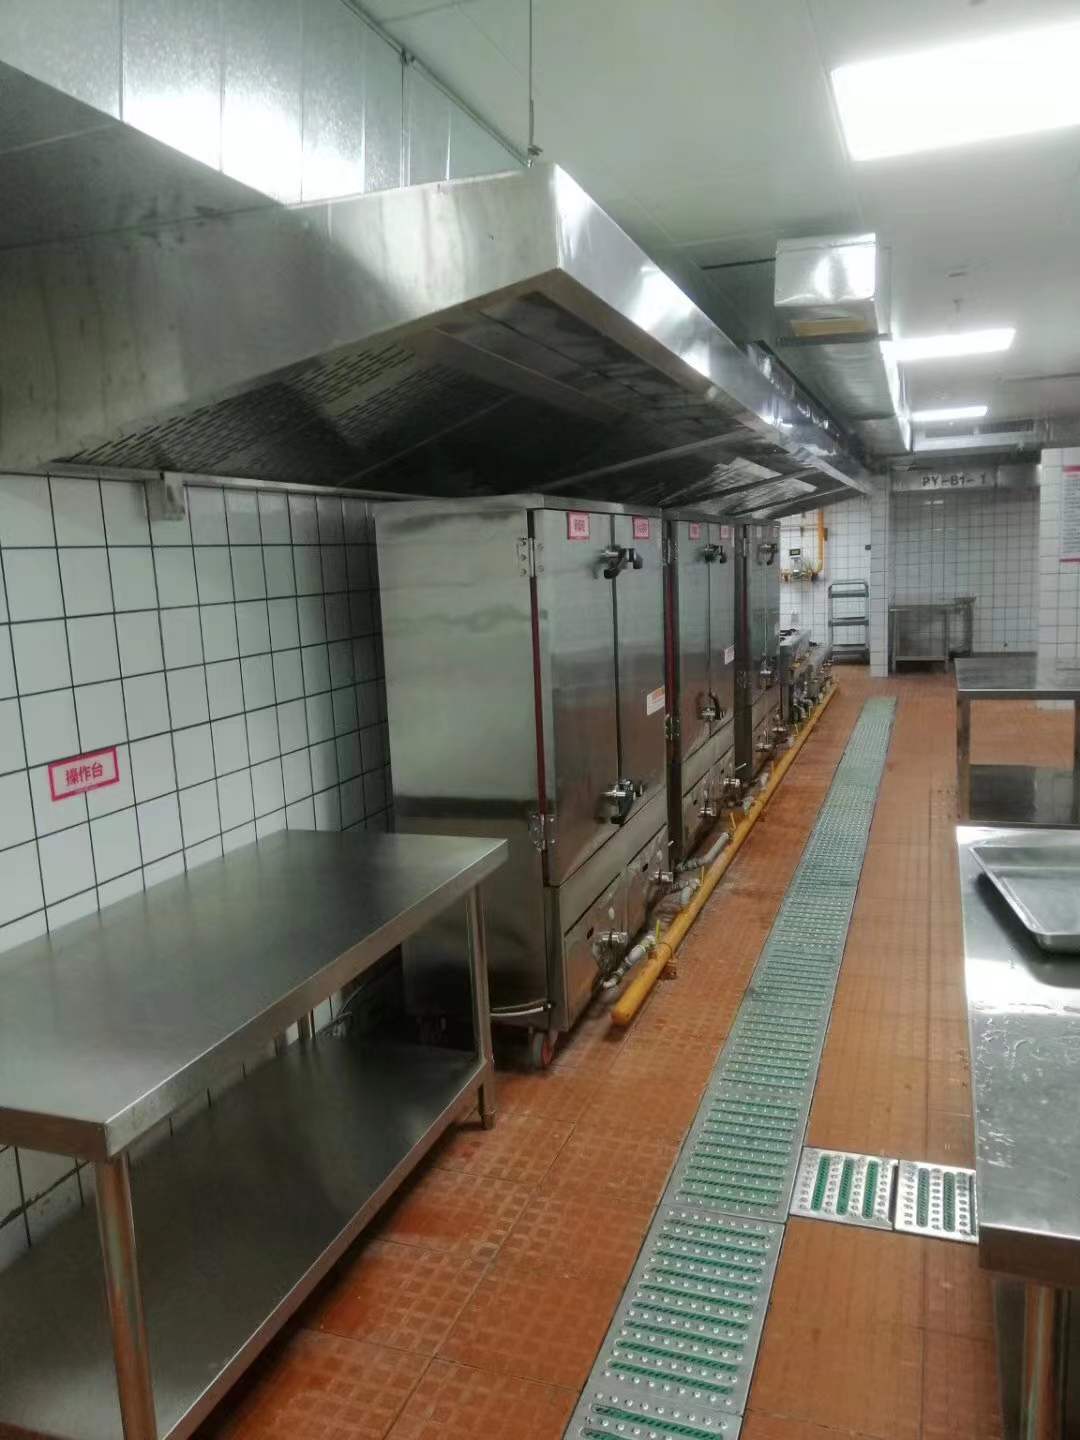 会所食堂厨房设备工程设计需要满足以下主要要求